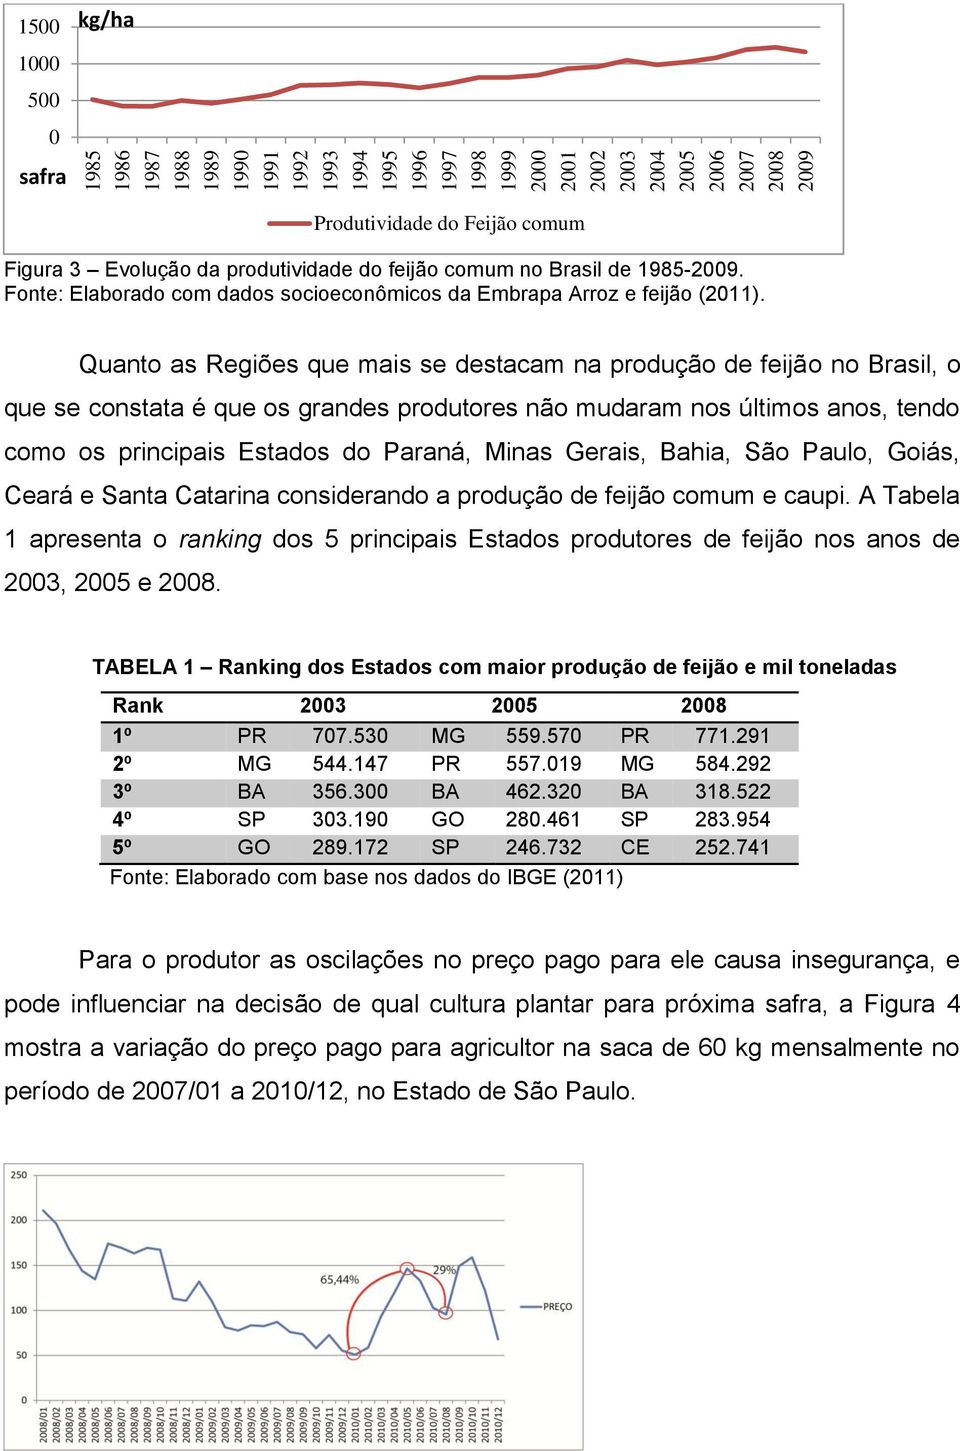 Quanto as Regiões que mais se destacam na produção de feijão no Brasil, o que se constata é que os grandes produtores não mudaram nos últimos anos, tendo como os principais Estados do Paraná, Minas